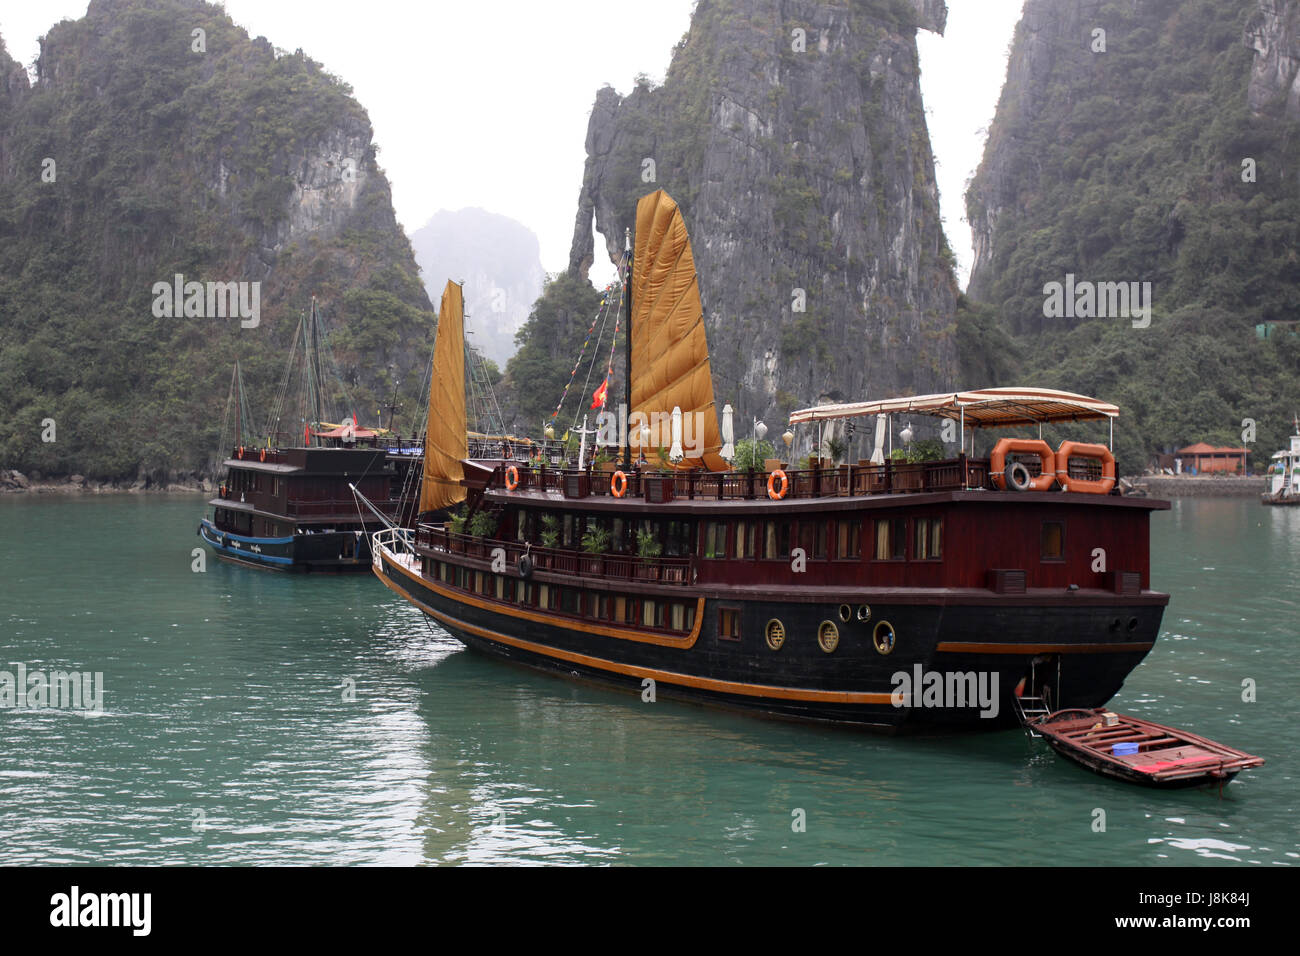 L'Asie, le tourisme, le Viet Nam, Vietnam, voile, bateau à rames, bateau à voile, voilier, Banque D'Images